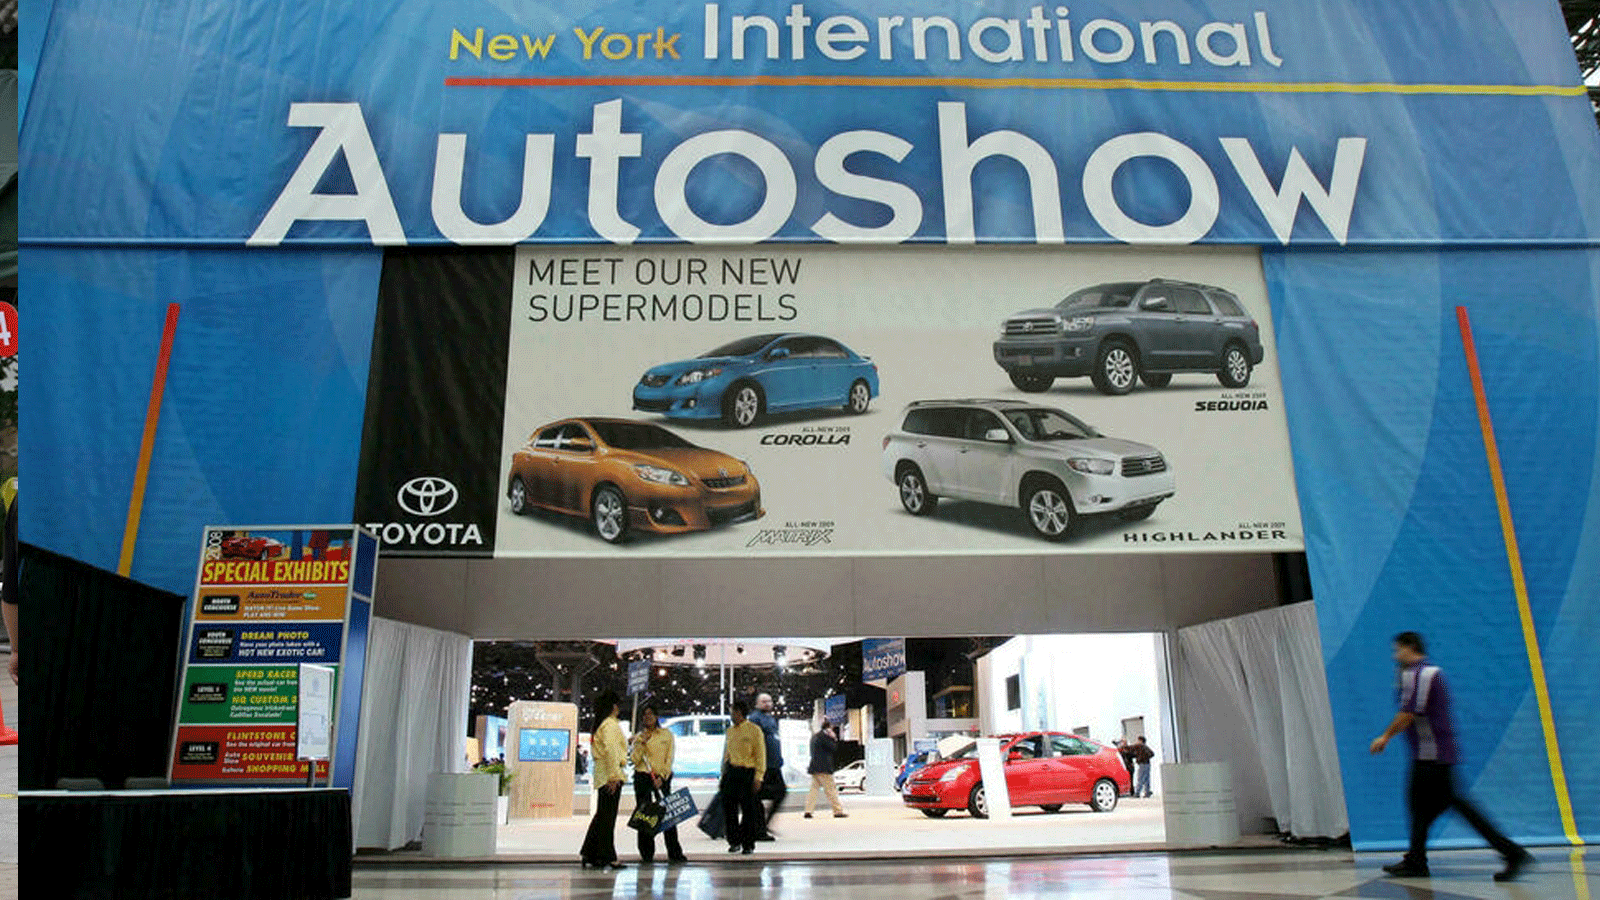  معرض نيويورك الدولي للسيارات الذي ألغى فعاليته لعام 2021، بسبب كوفيد-19